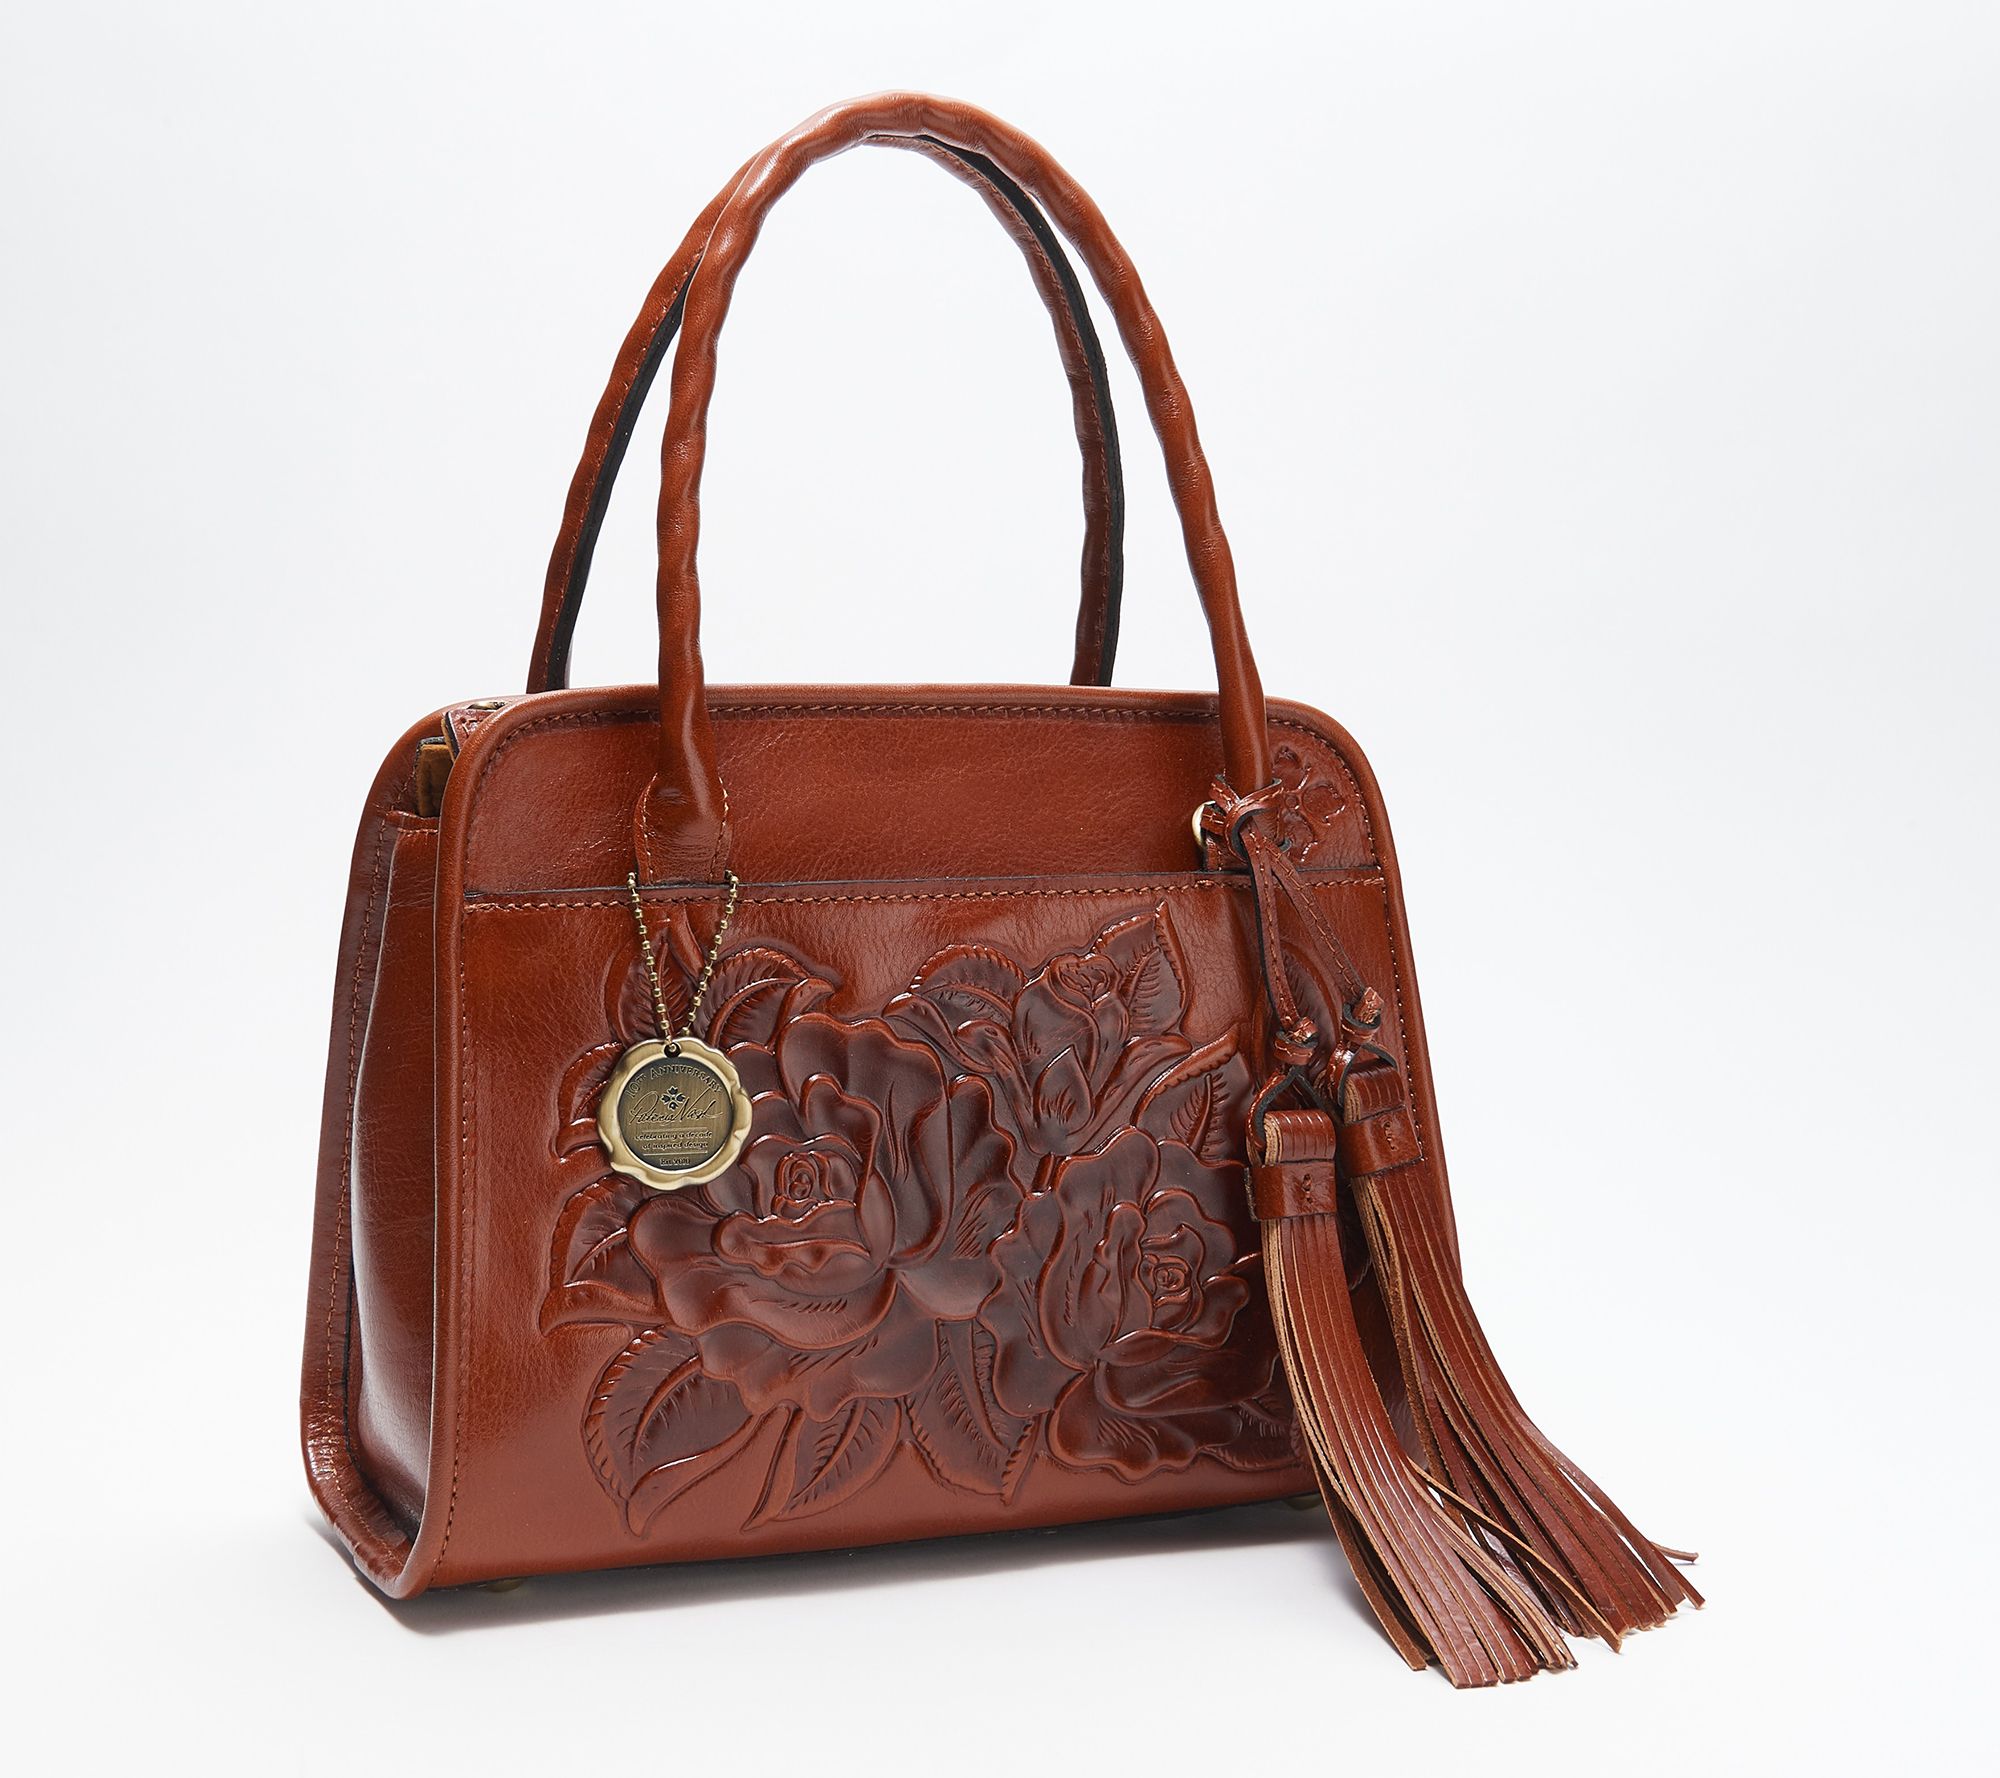 Handbag Designer Patricia Nash | semashow.com